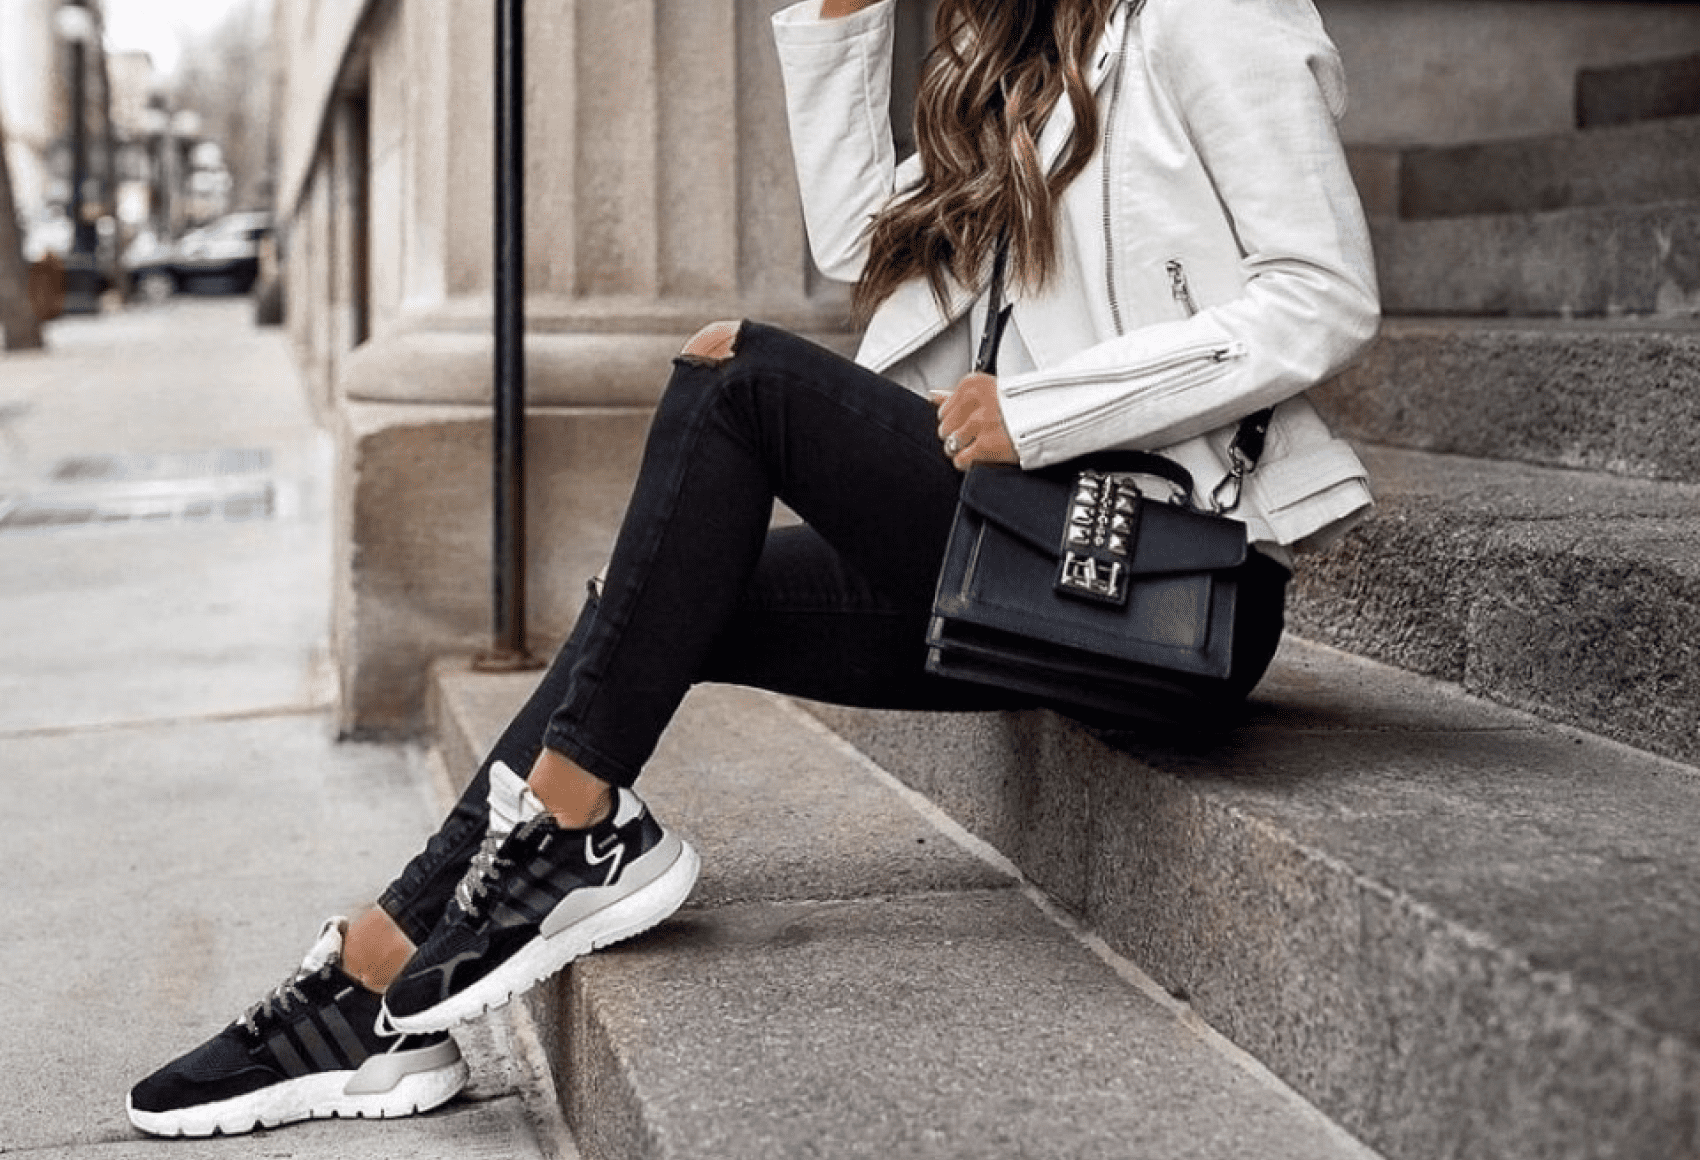 Черные кроссовки: с чем сочетать и носить женские и мужские кроссы черногоцвета с белой подошвой, модные образы со спортивной обувью